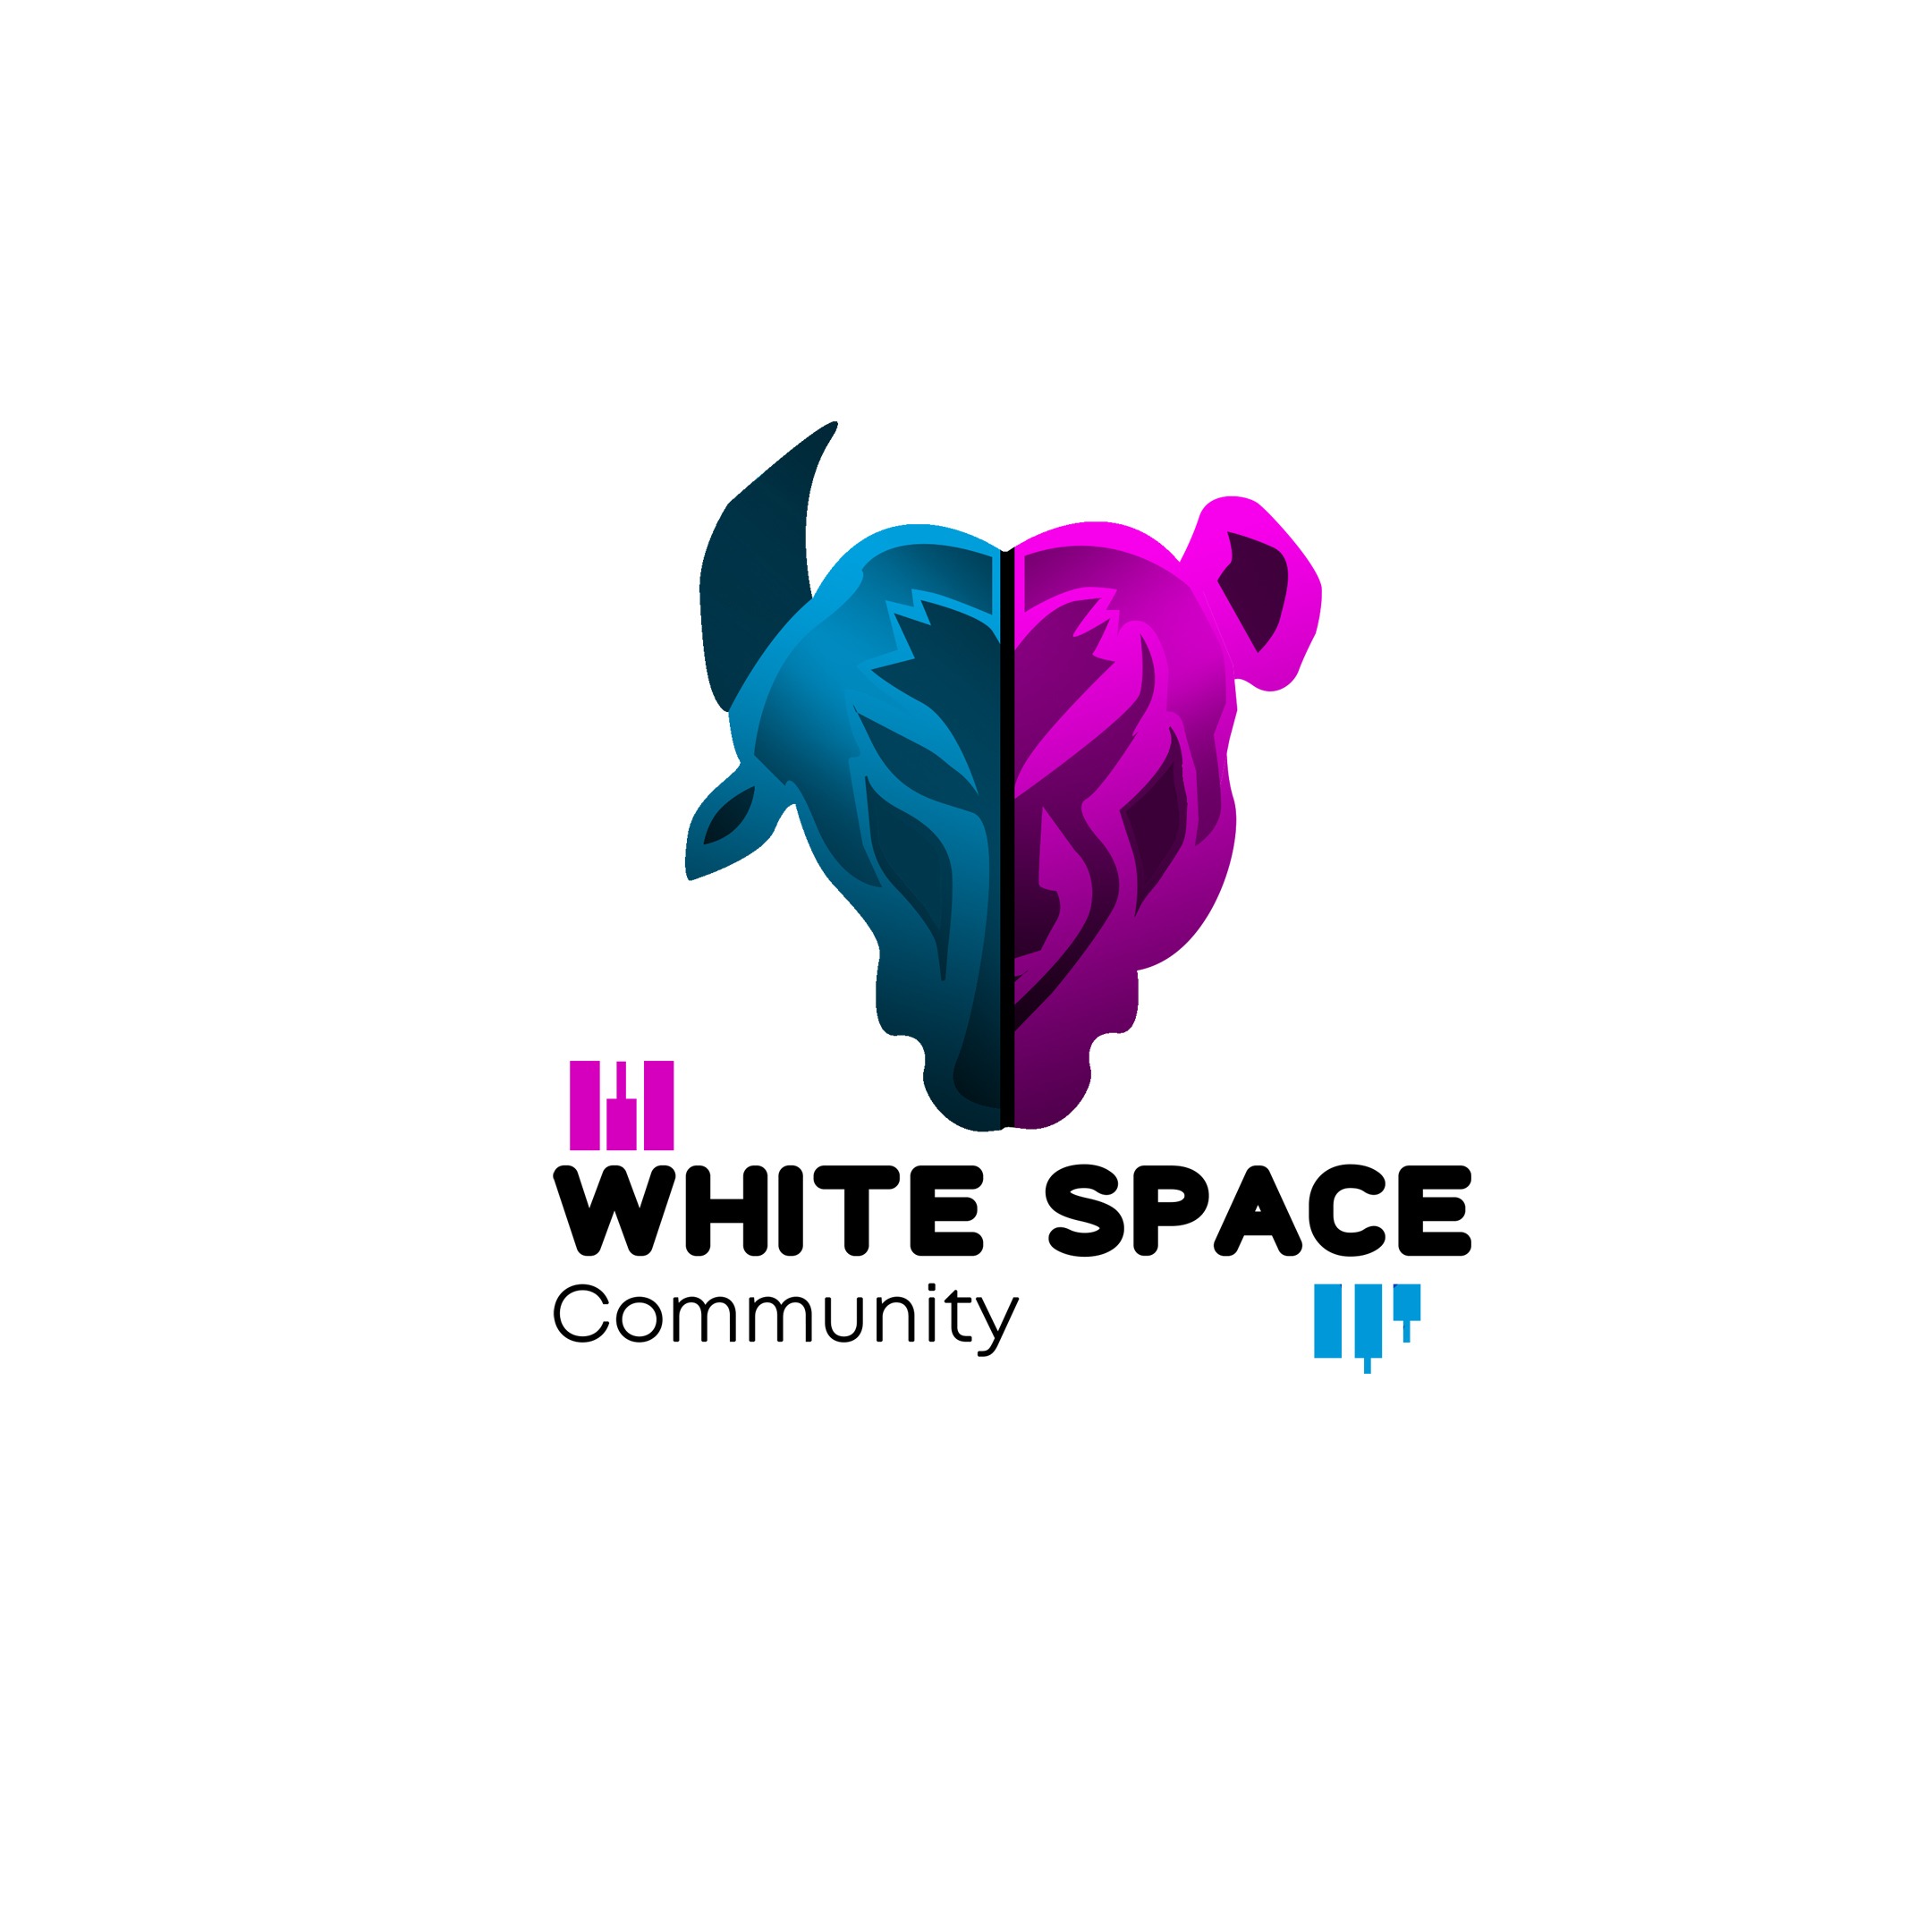 WhiteSpace Community